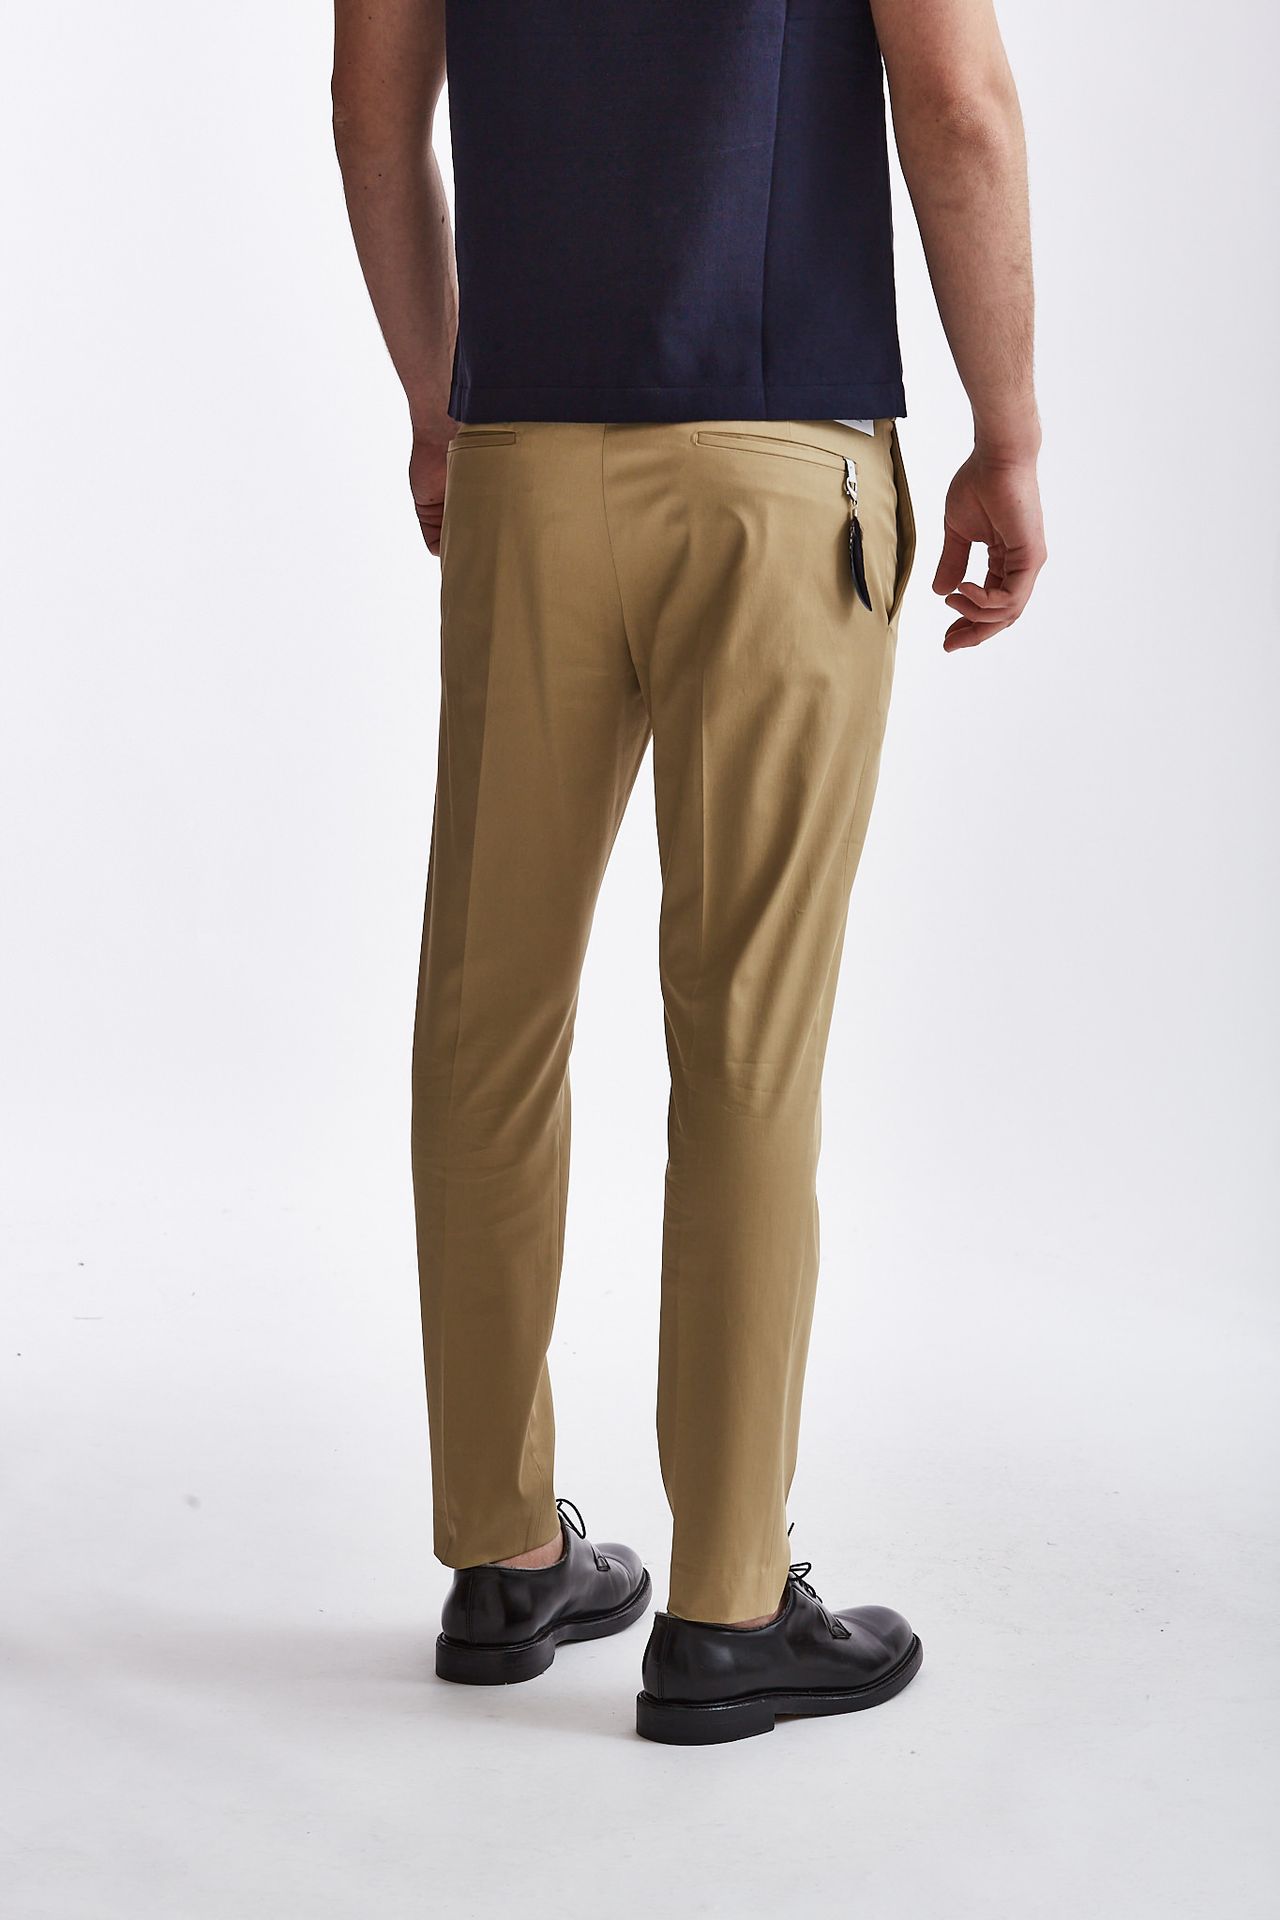 Pantalone EDGE-DIECI in cotone cammello